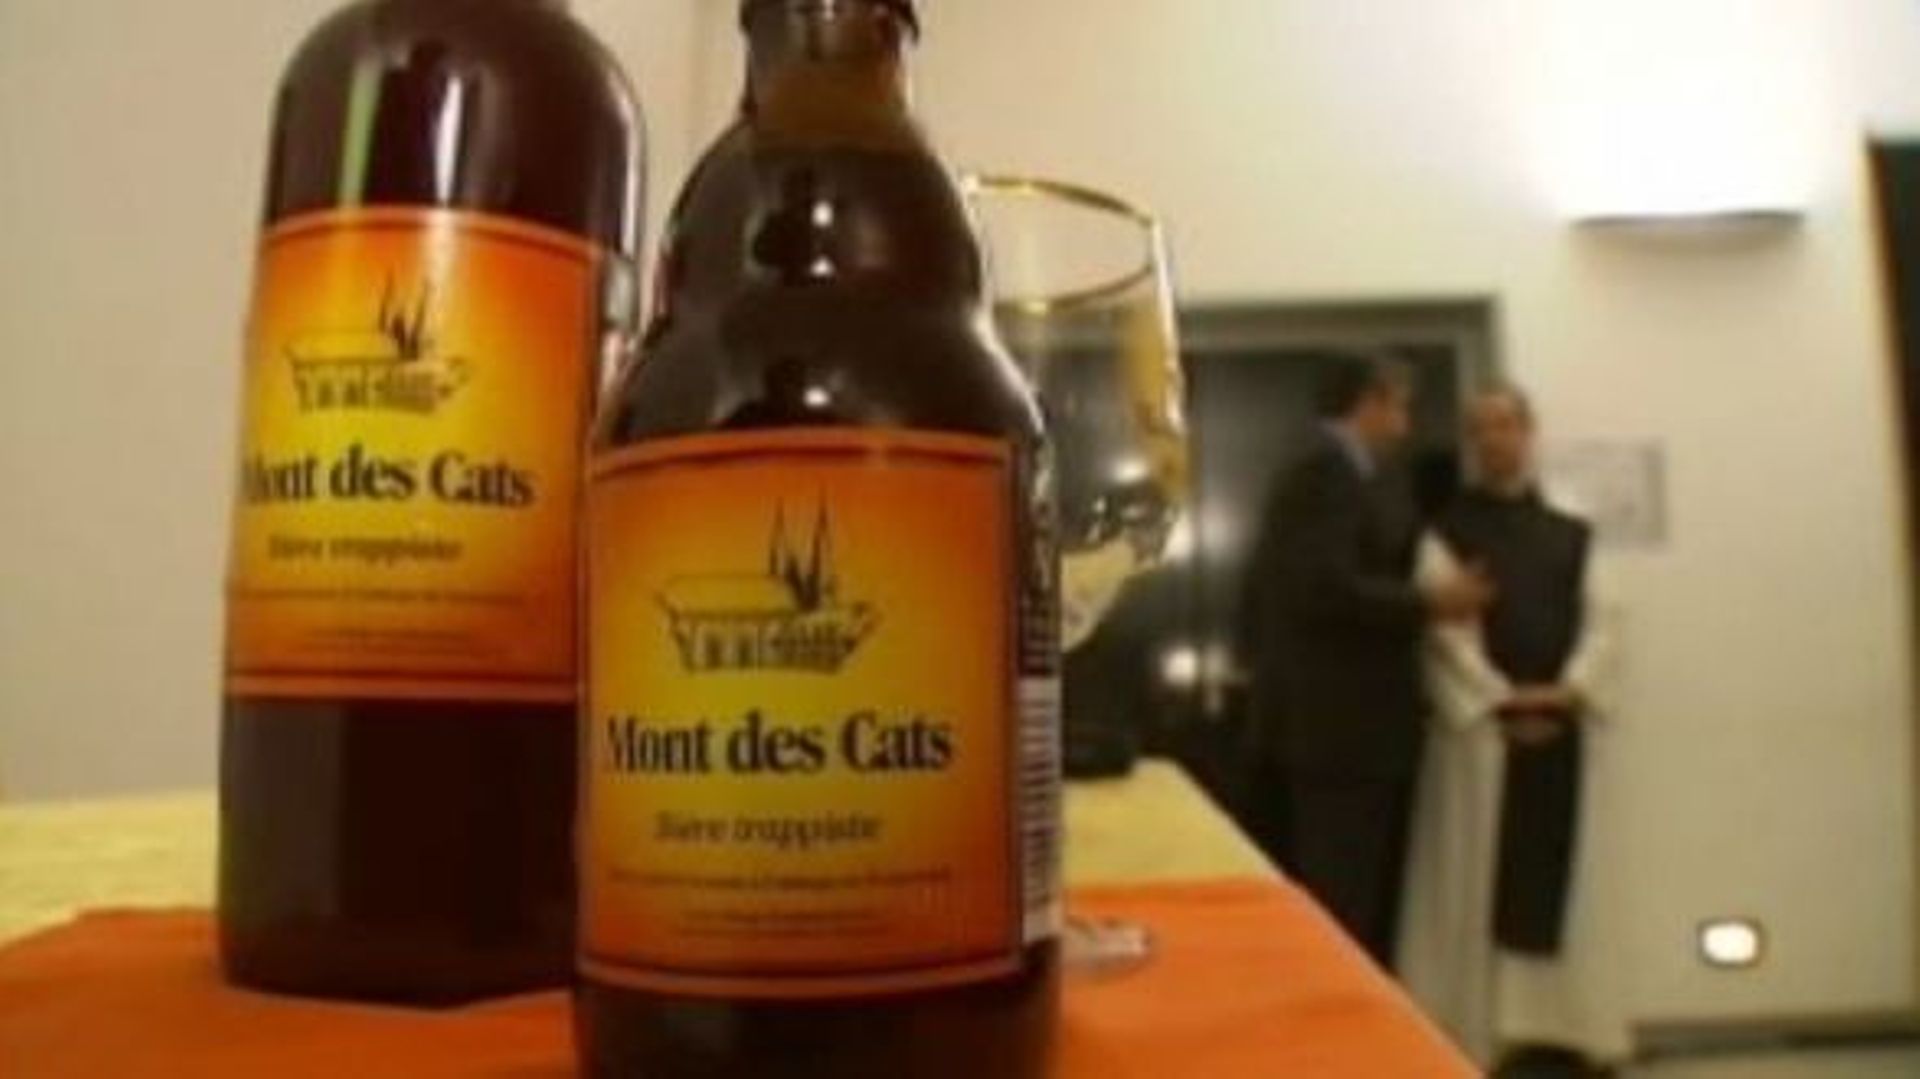 "Mont des Cats", une huitième bière trappiste française?